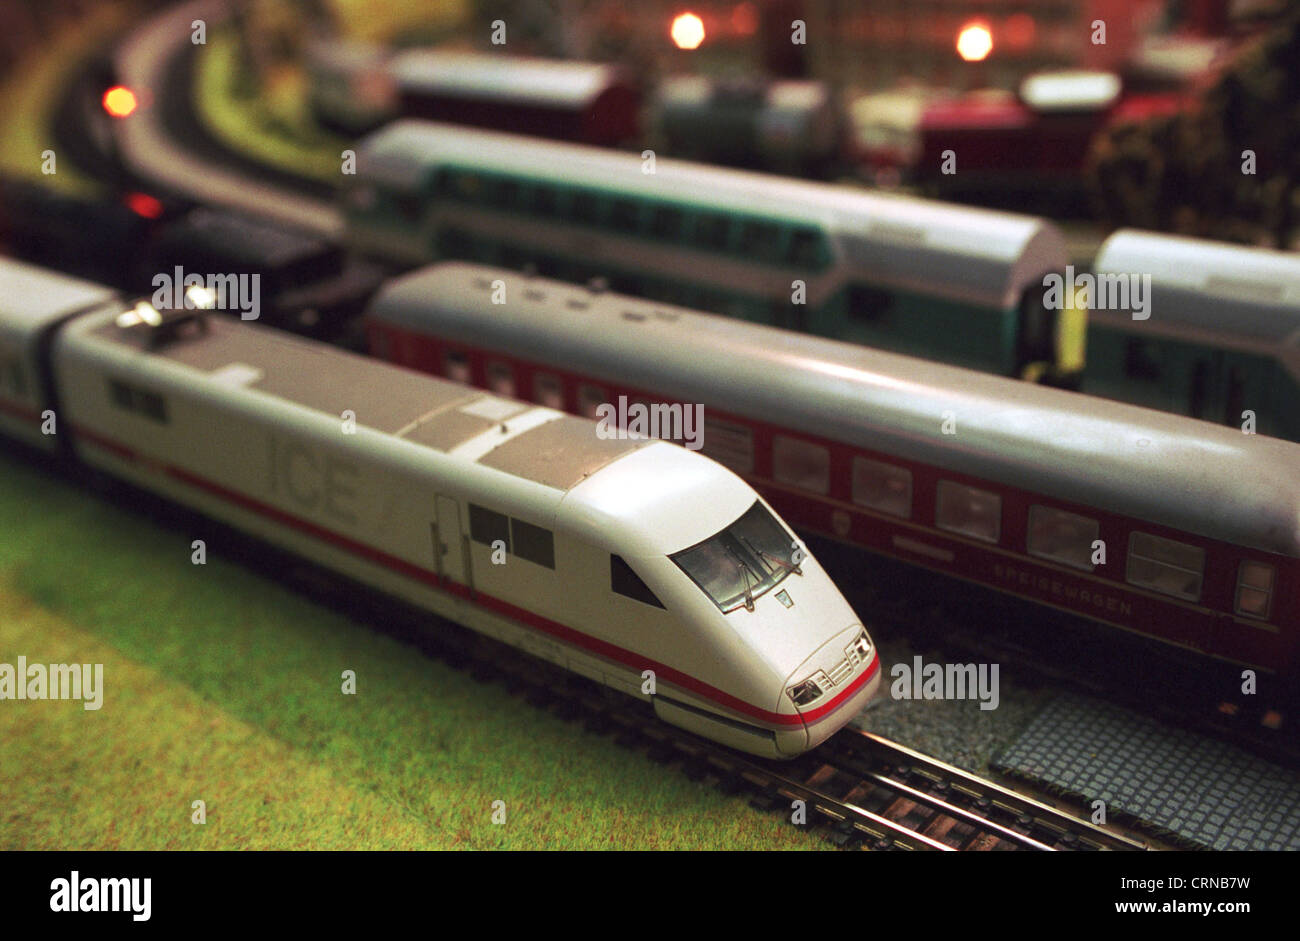 Trains of Deutsche Bahn in the model Stock Photo